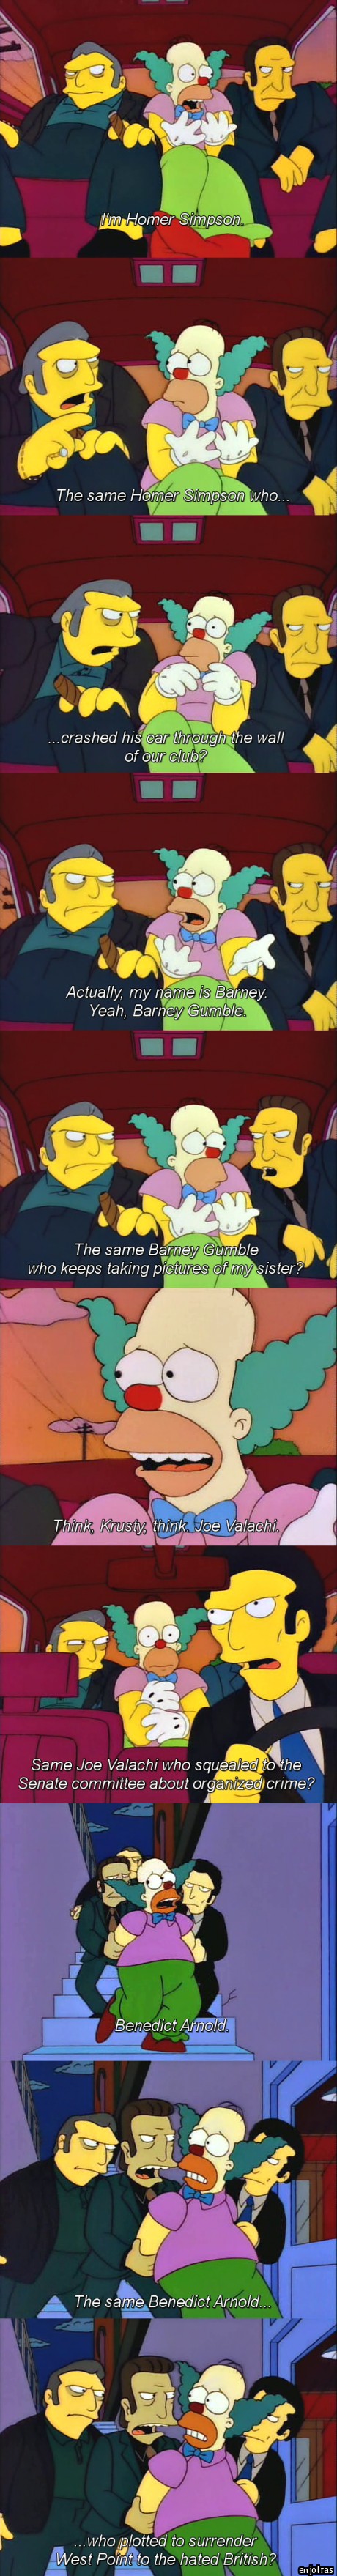 Poor Krusty.